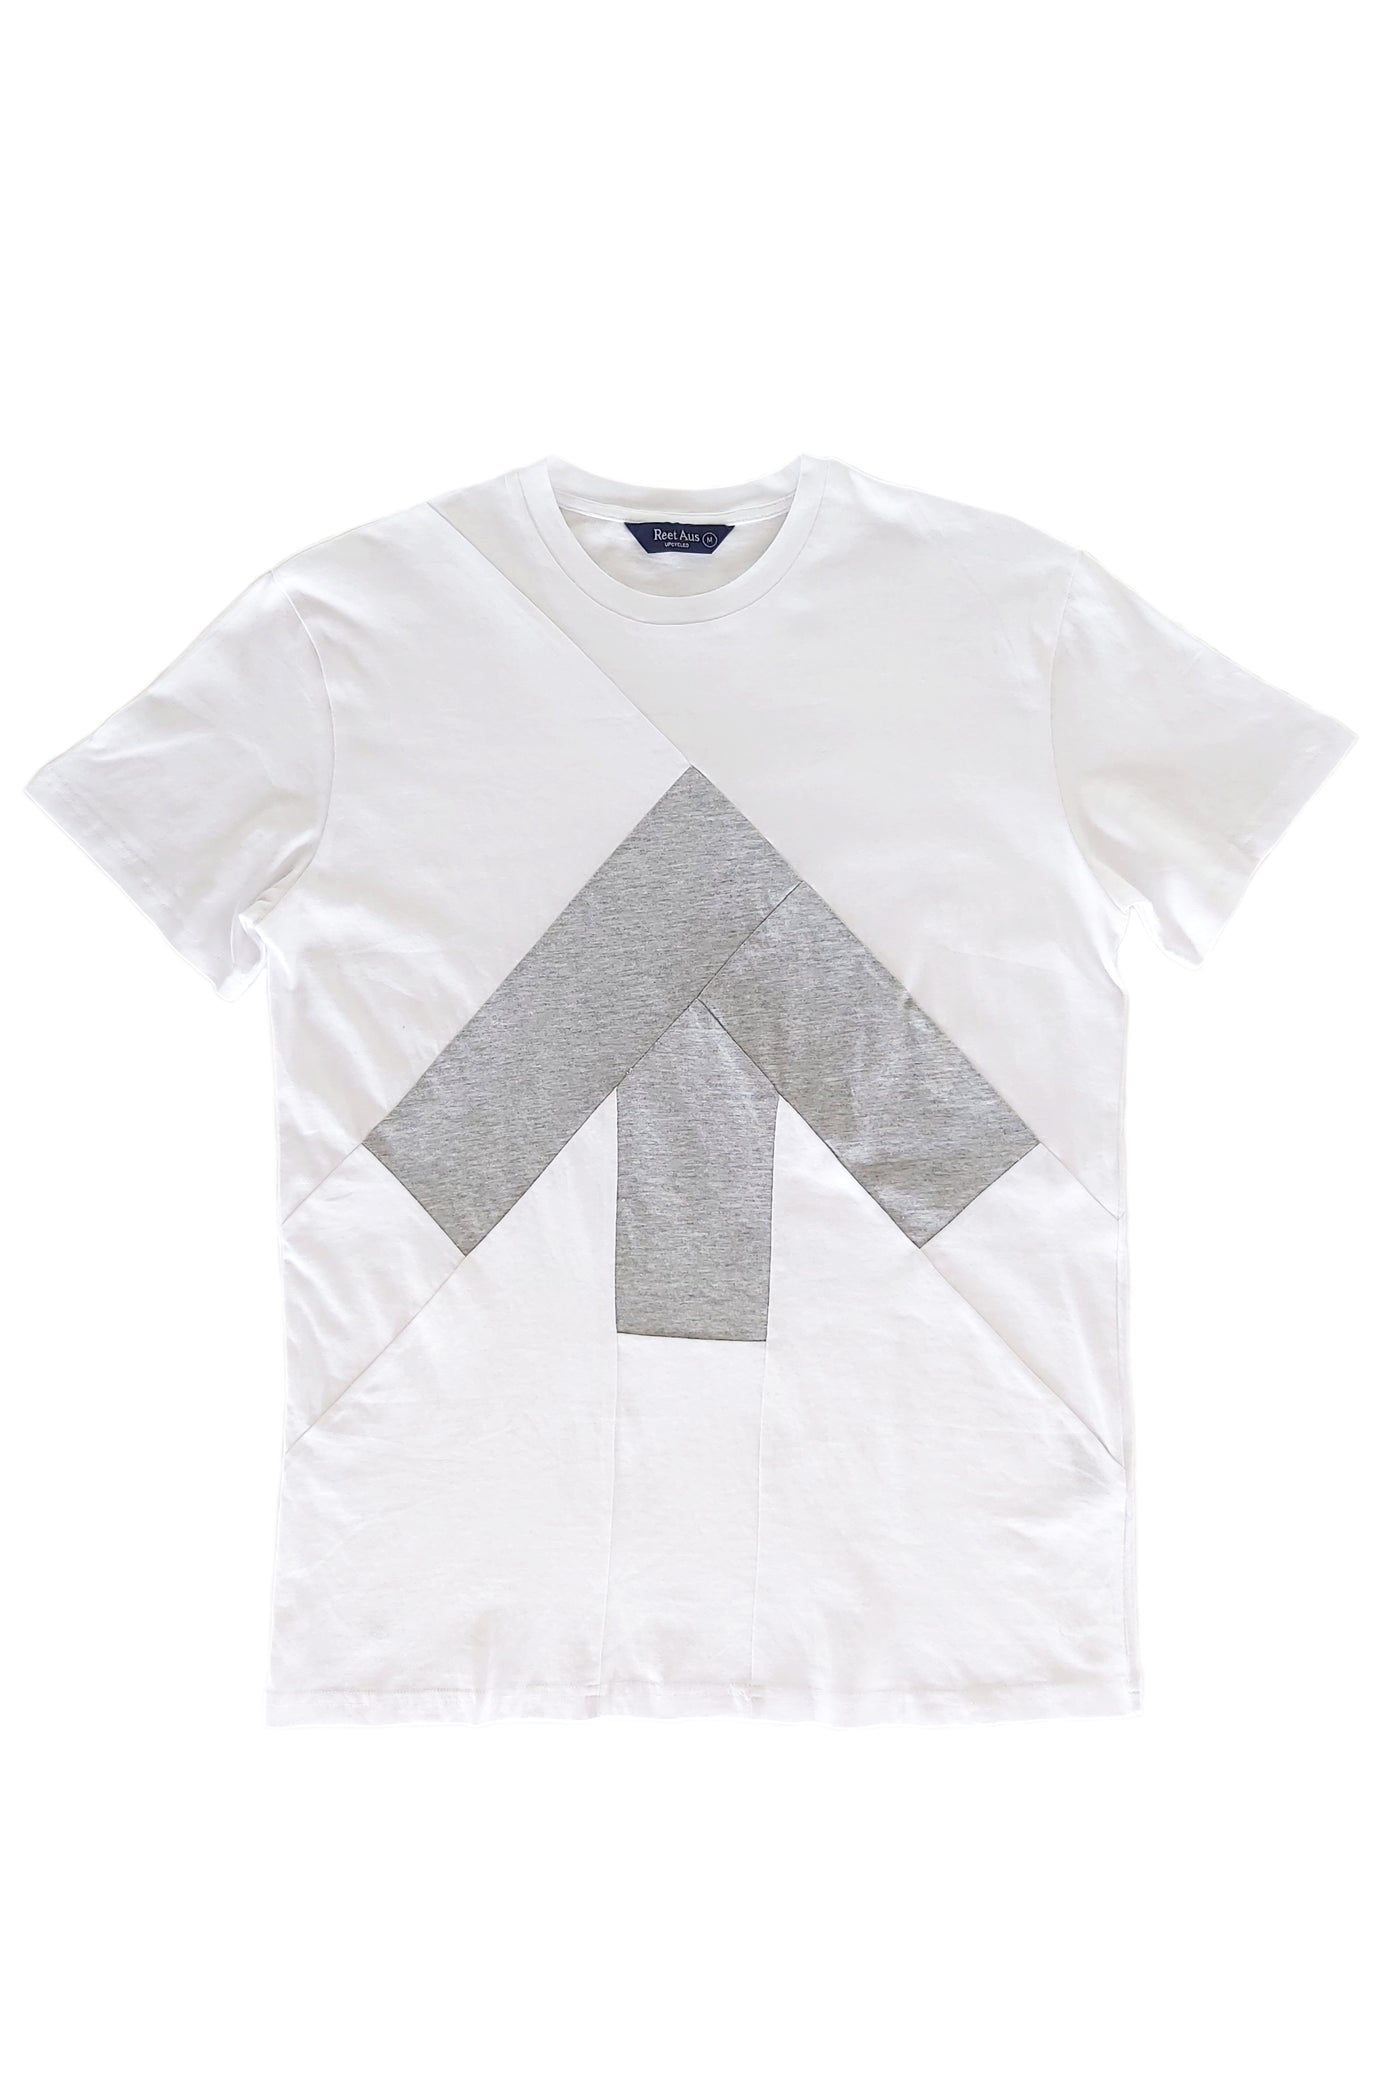 Up-shirt for men | White, grey - Reet Aus